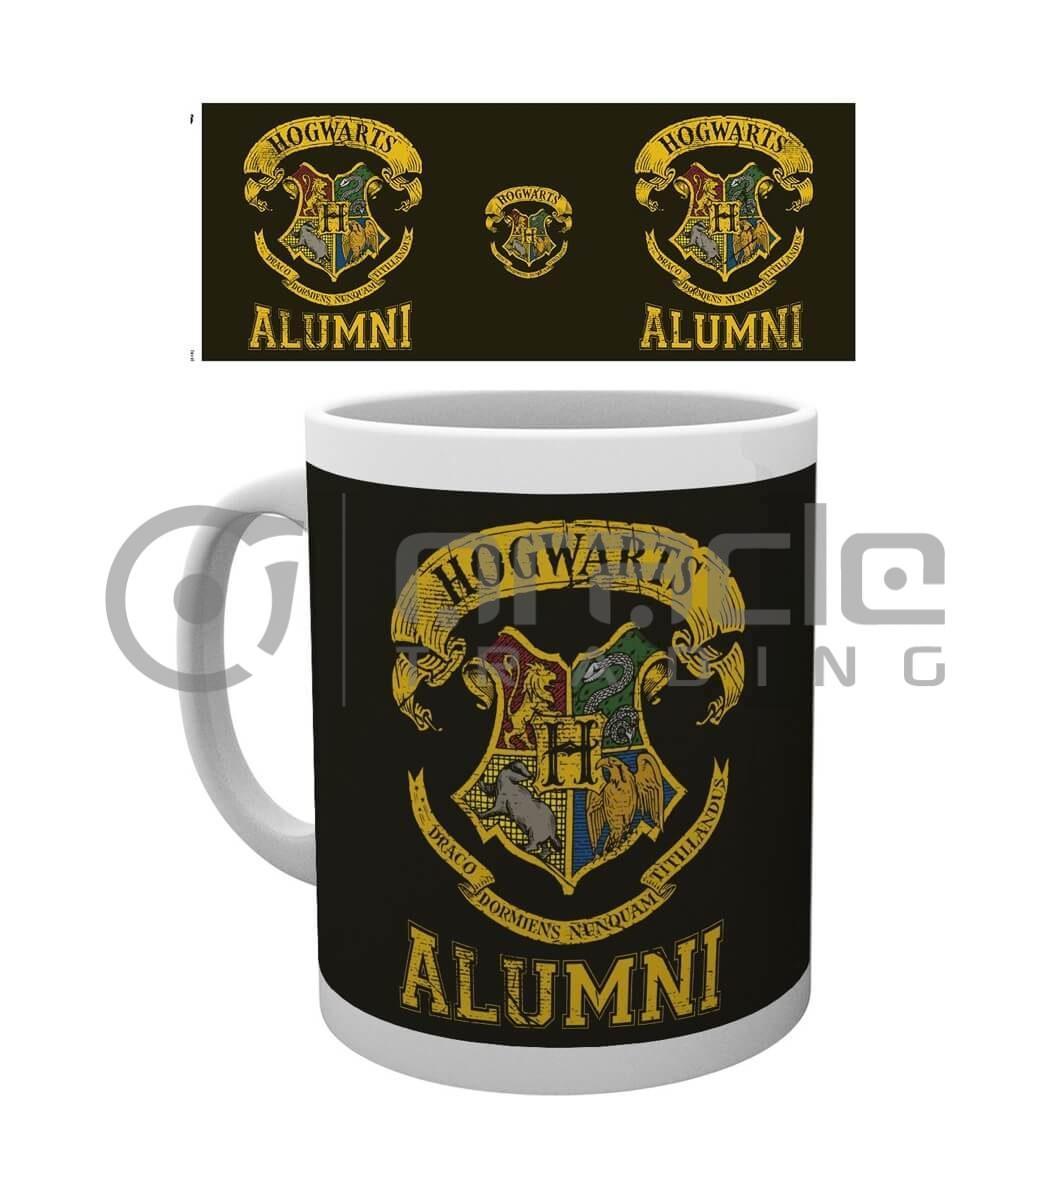 Harry Potter Hogwarts Alumni Mug